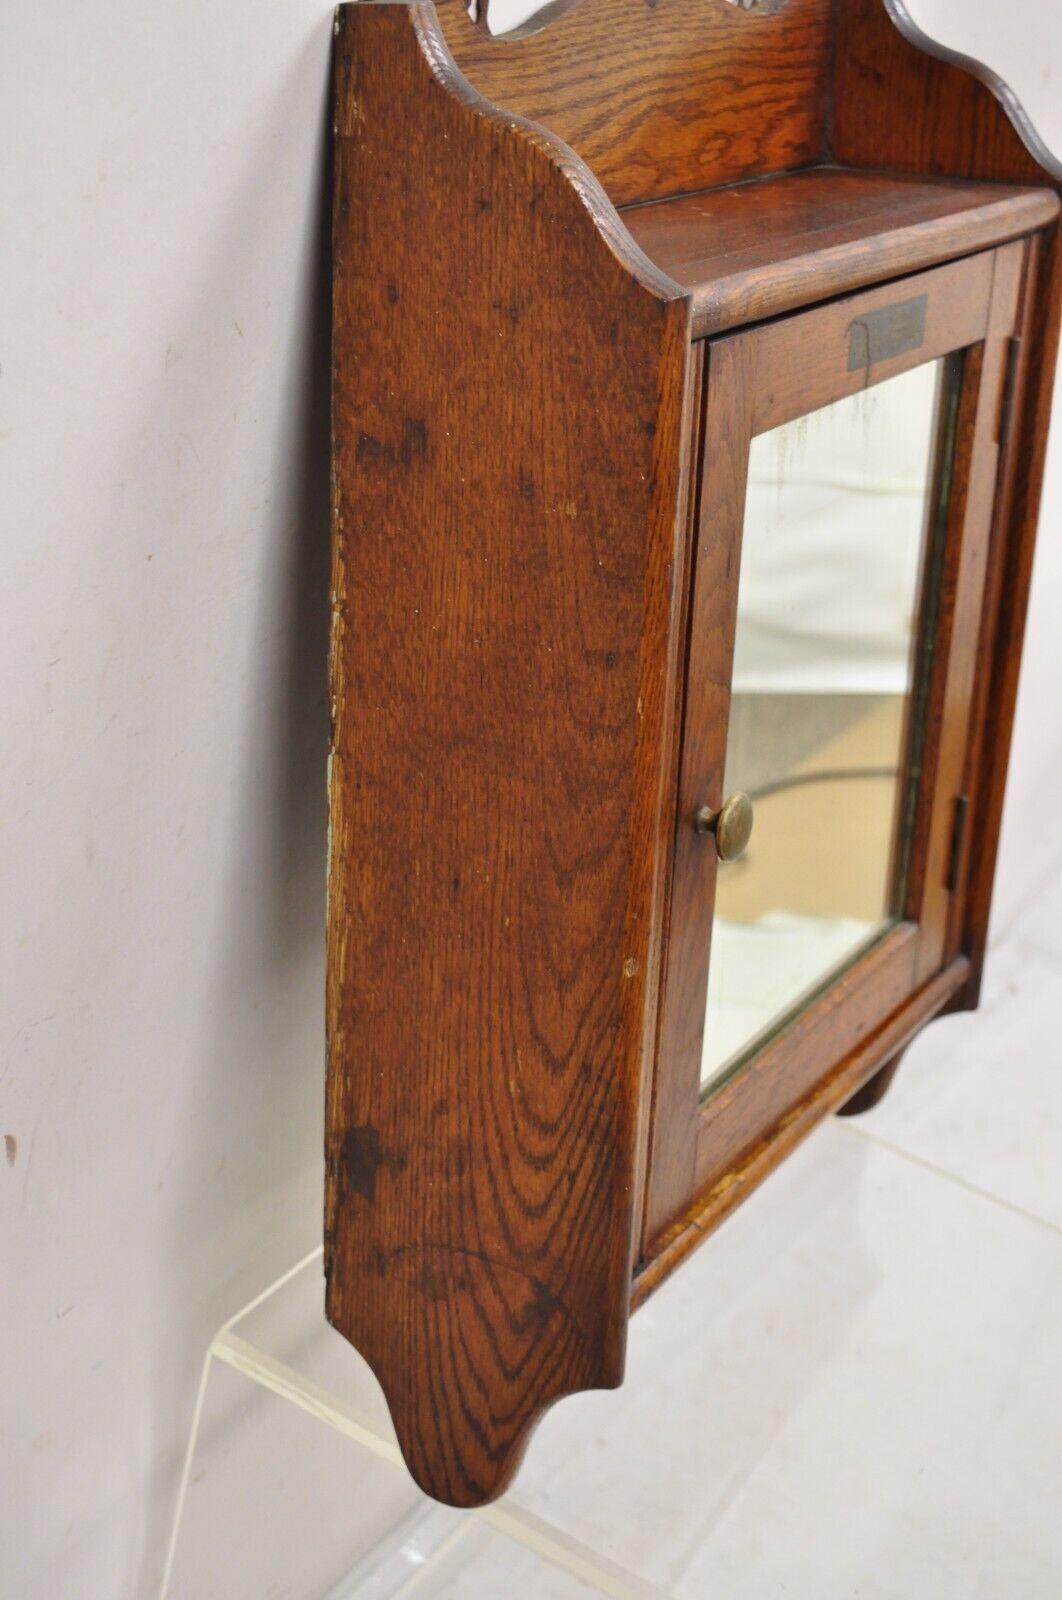 Antique Champion Towel Supply Oak Wood Bathroom Mirror Vanity Medicine Cabinet 4